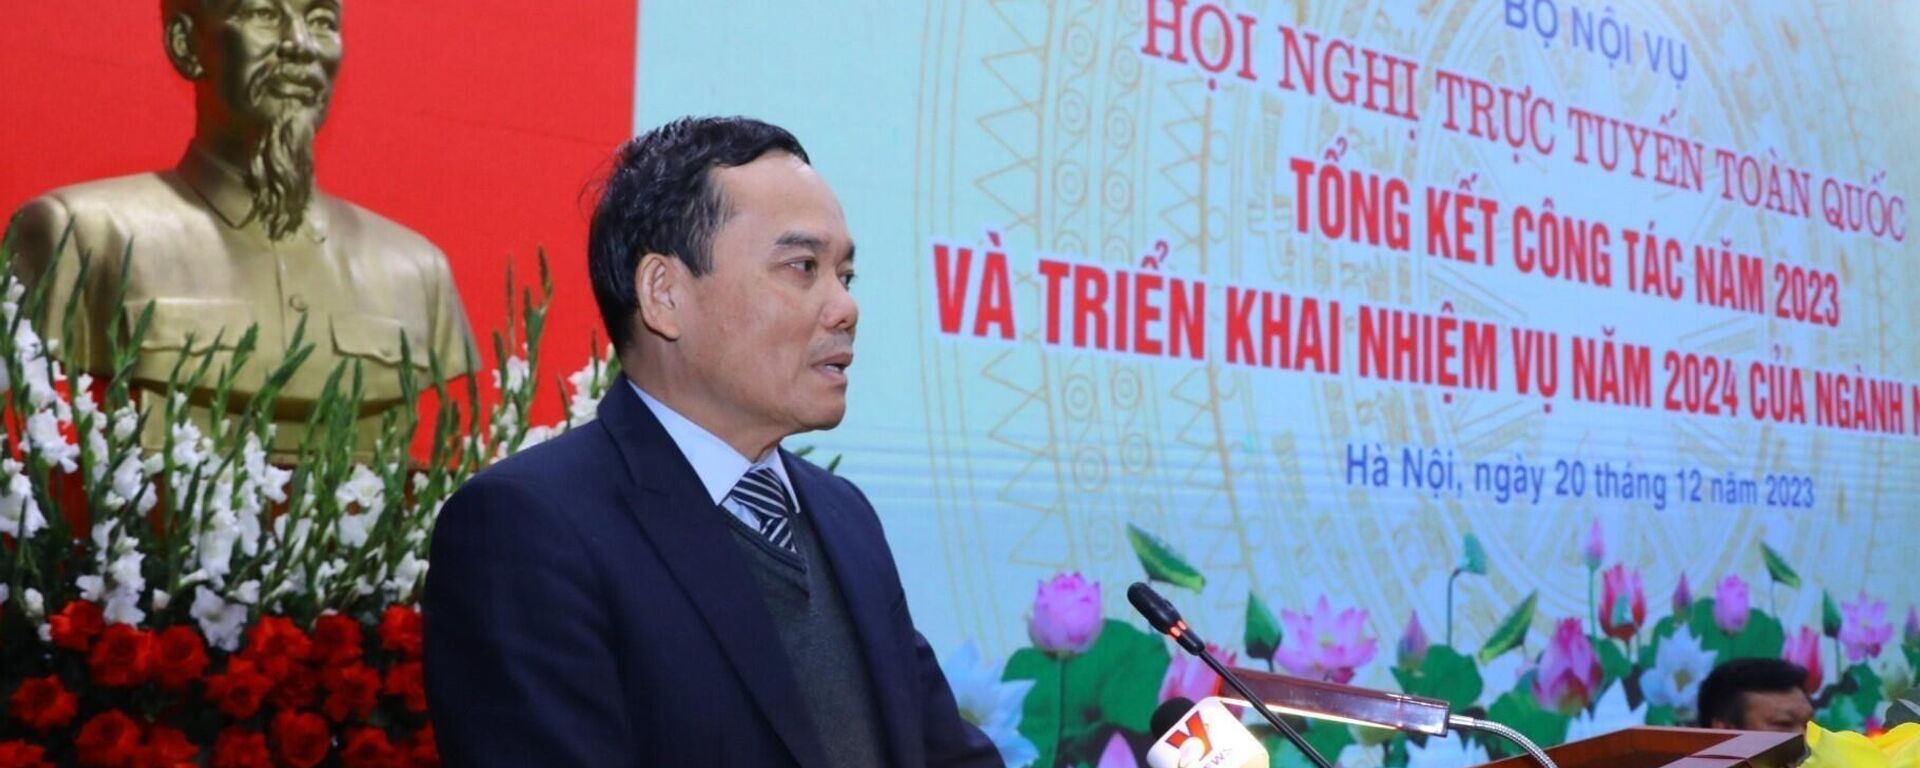 Phó thủ tướng Trần Lưu Quang tại hội nghị tổng kết công tác năm 2023 Bộ Nội vụ - Sputnik Việt Nam, 1920, 21.12.2023